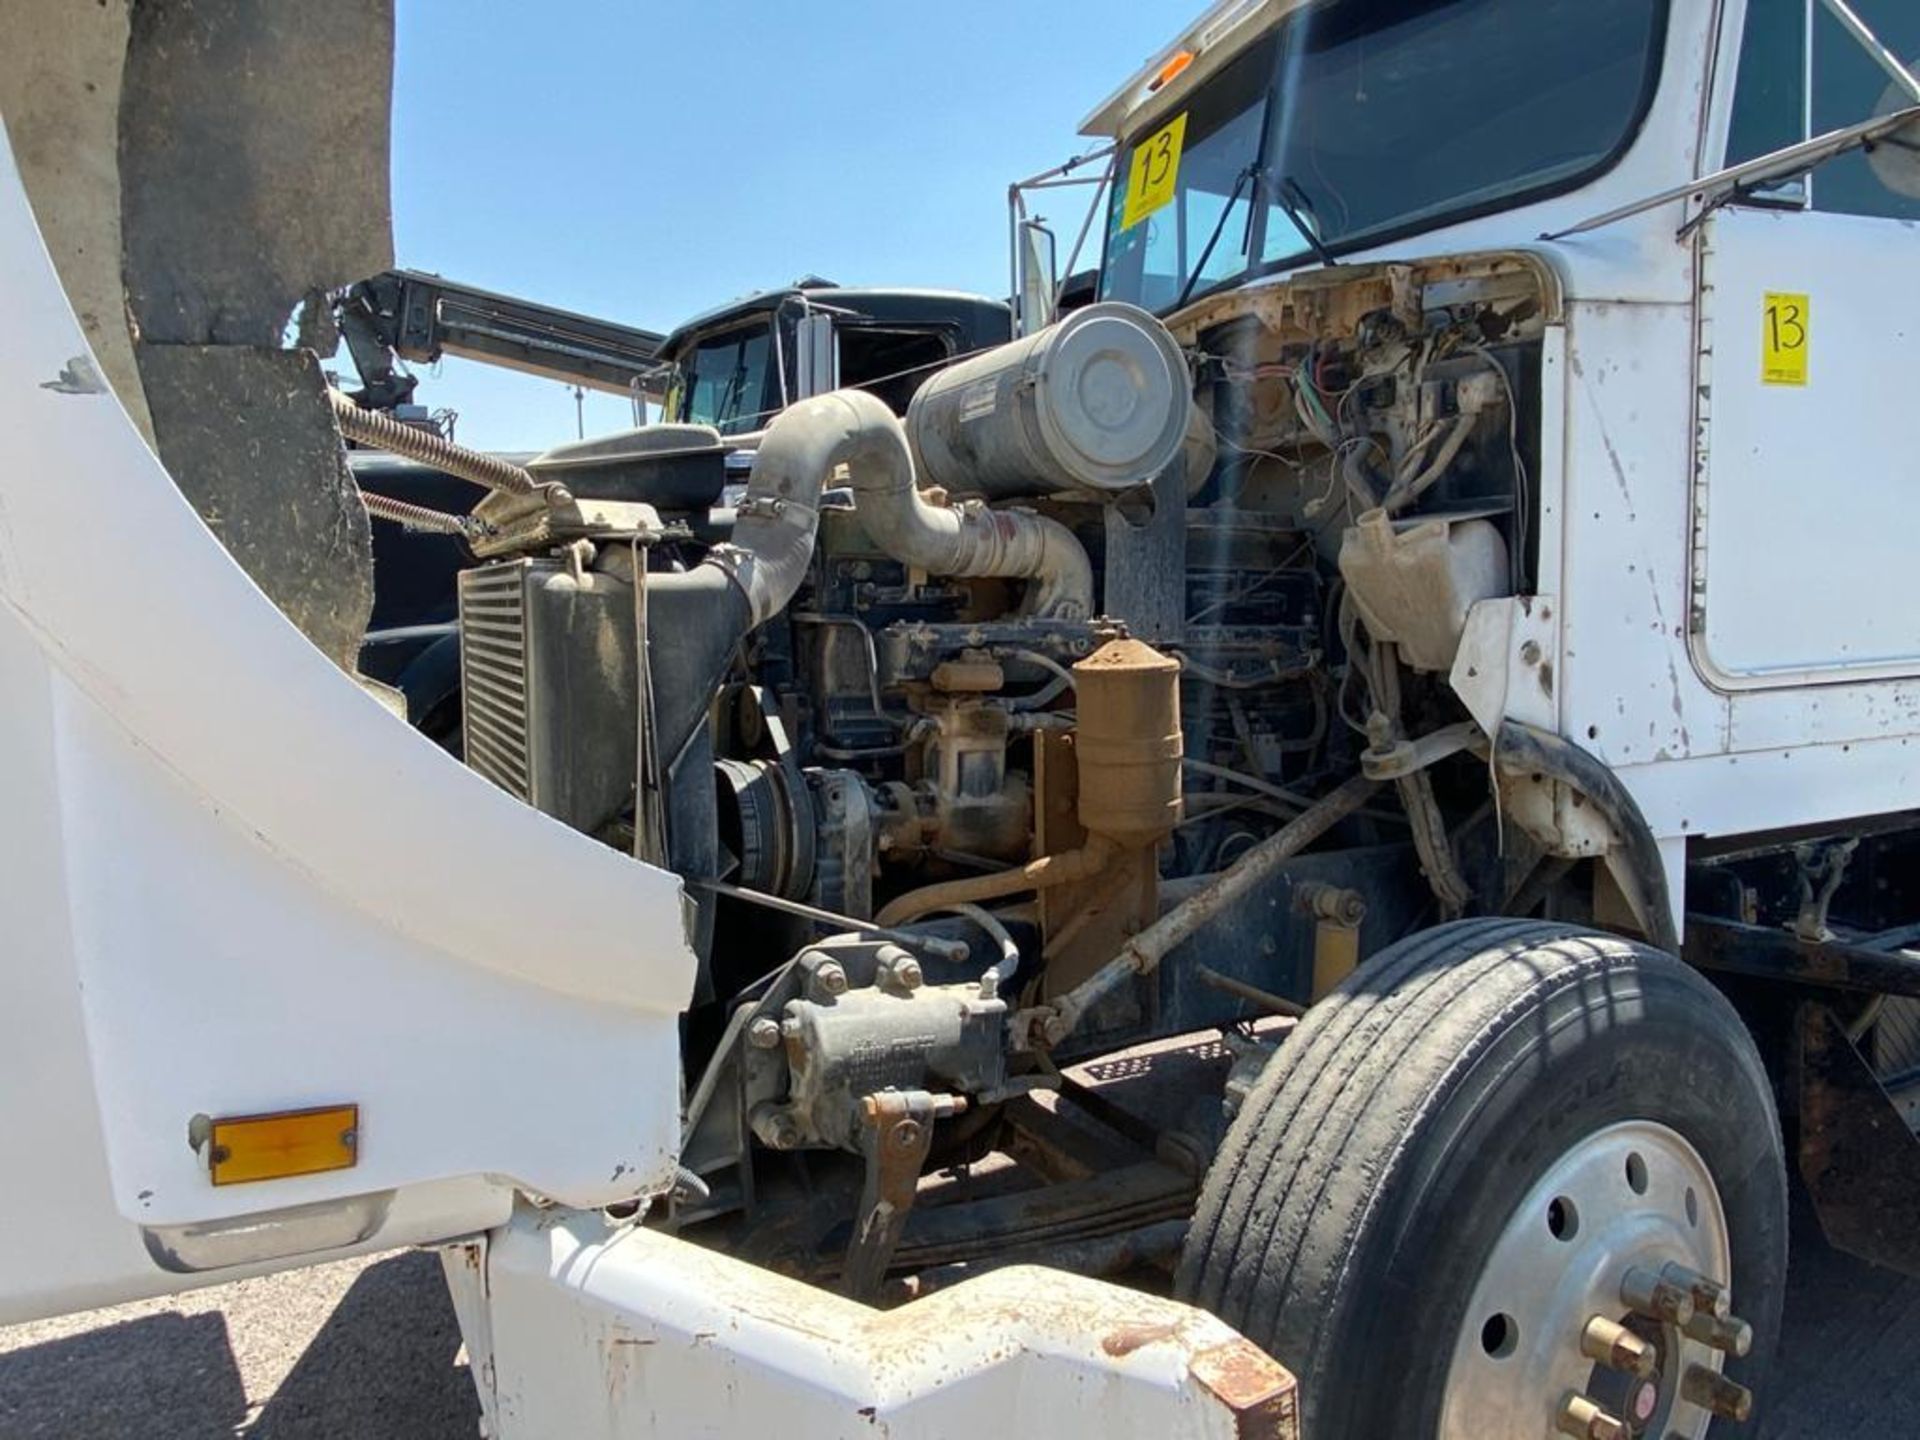 1982 Kenworth Dump Truck, standard transmission of 16 speeds - Image 57 of 59